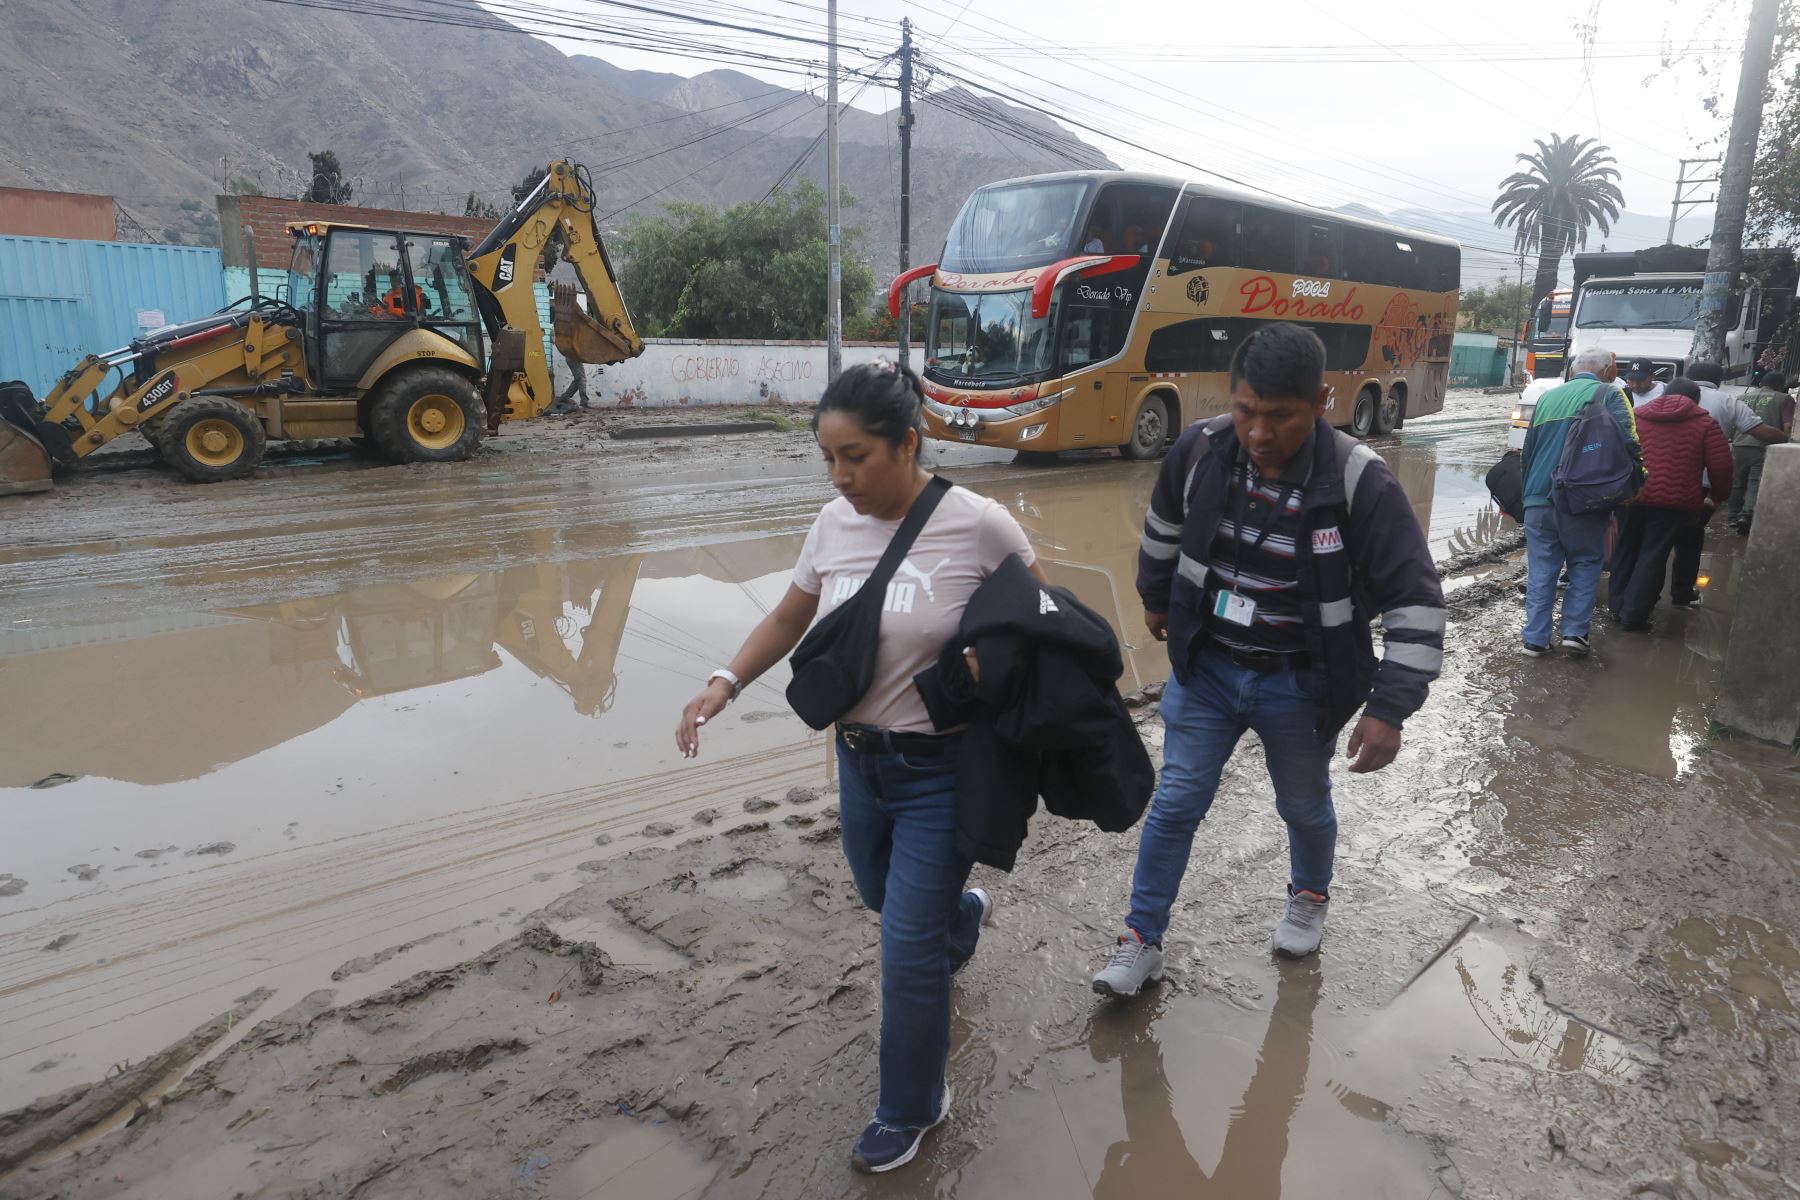 Las personas han tenido que transitar sobre el barro para poder llegar a sus destinos sin verse afectados por estos deslizamientos. (Andina)